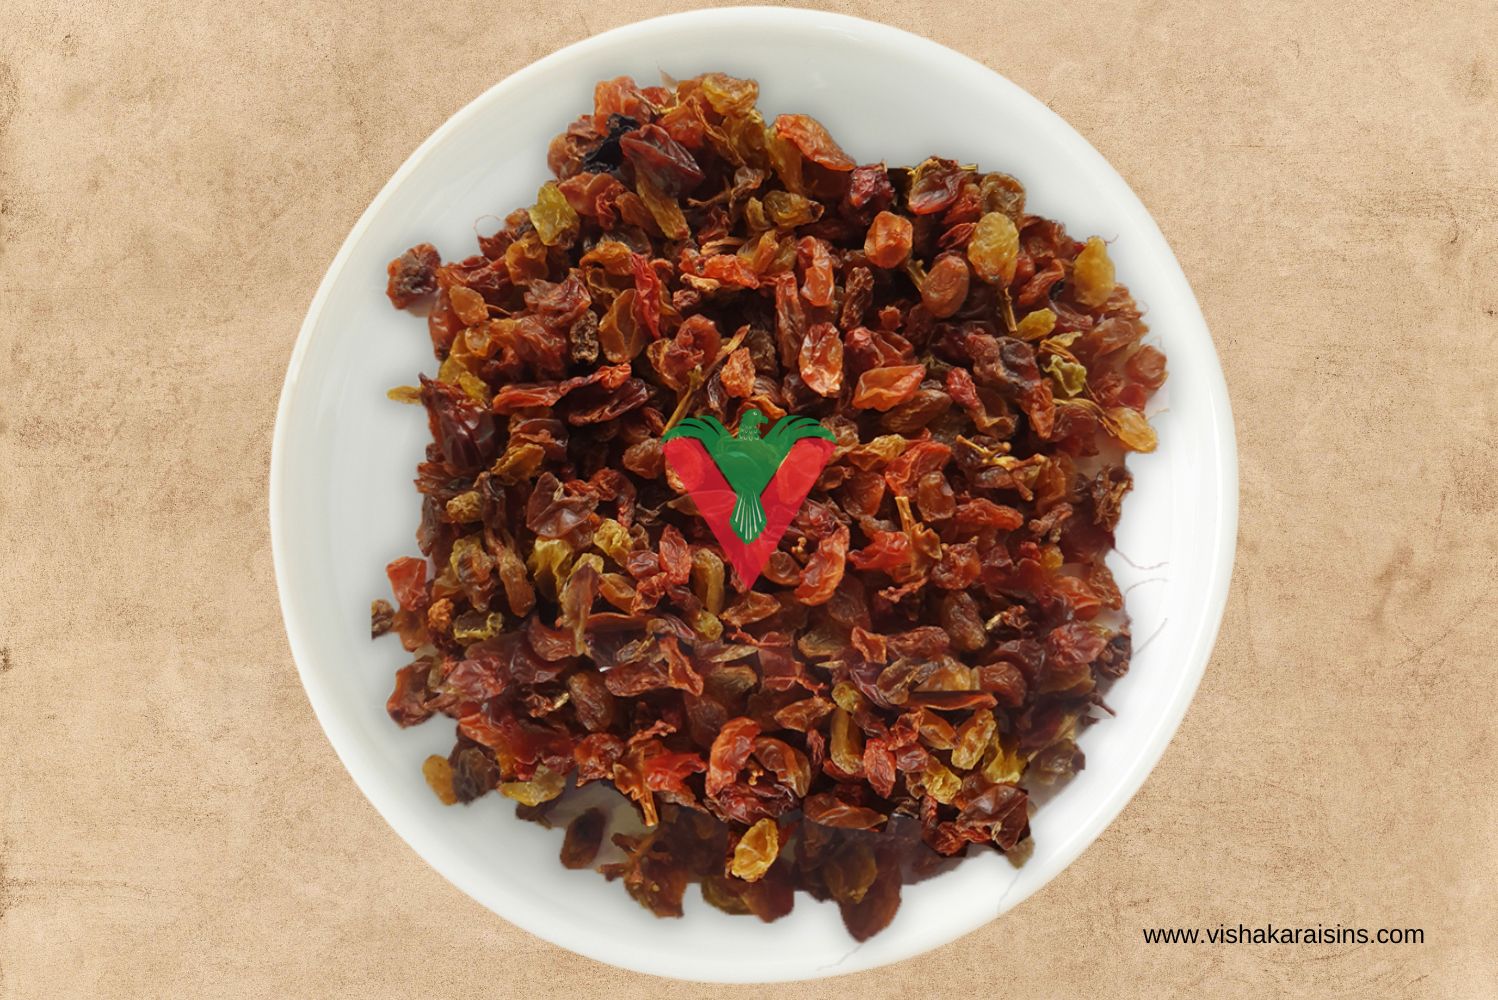 Malayar Birdfeed Raisins